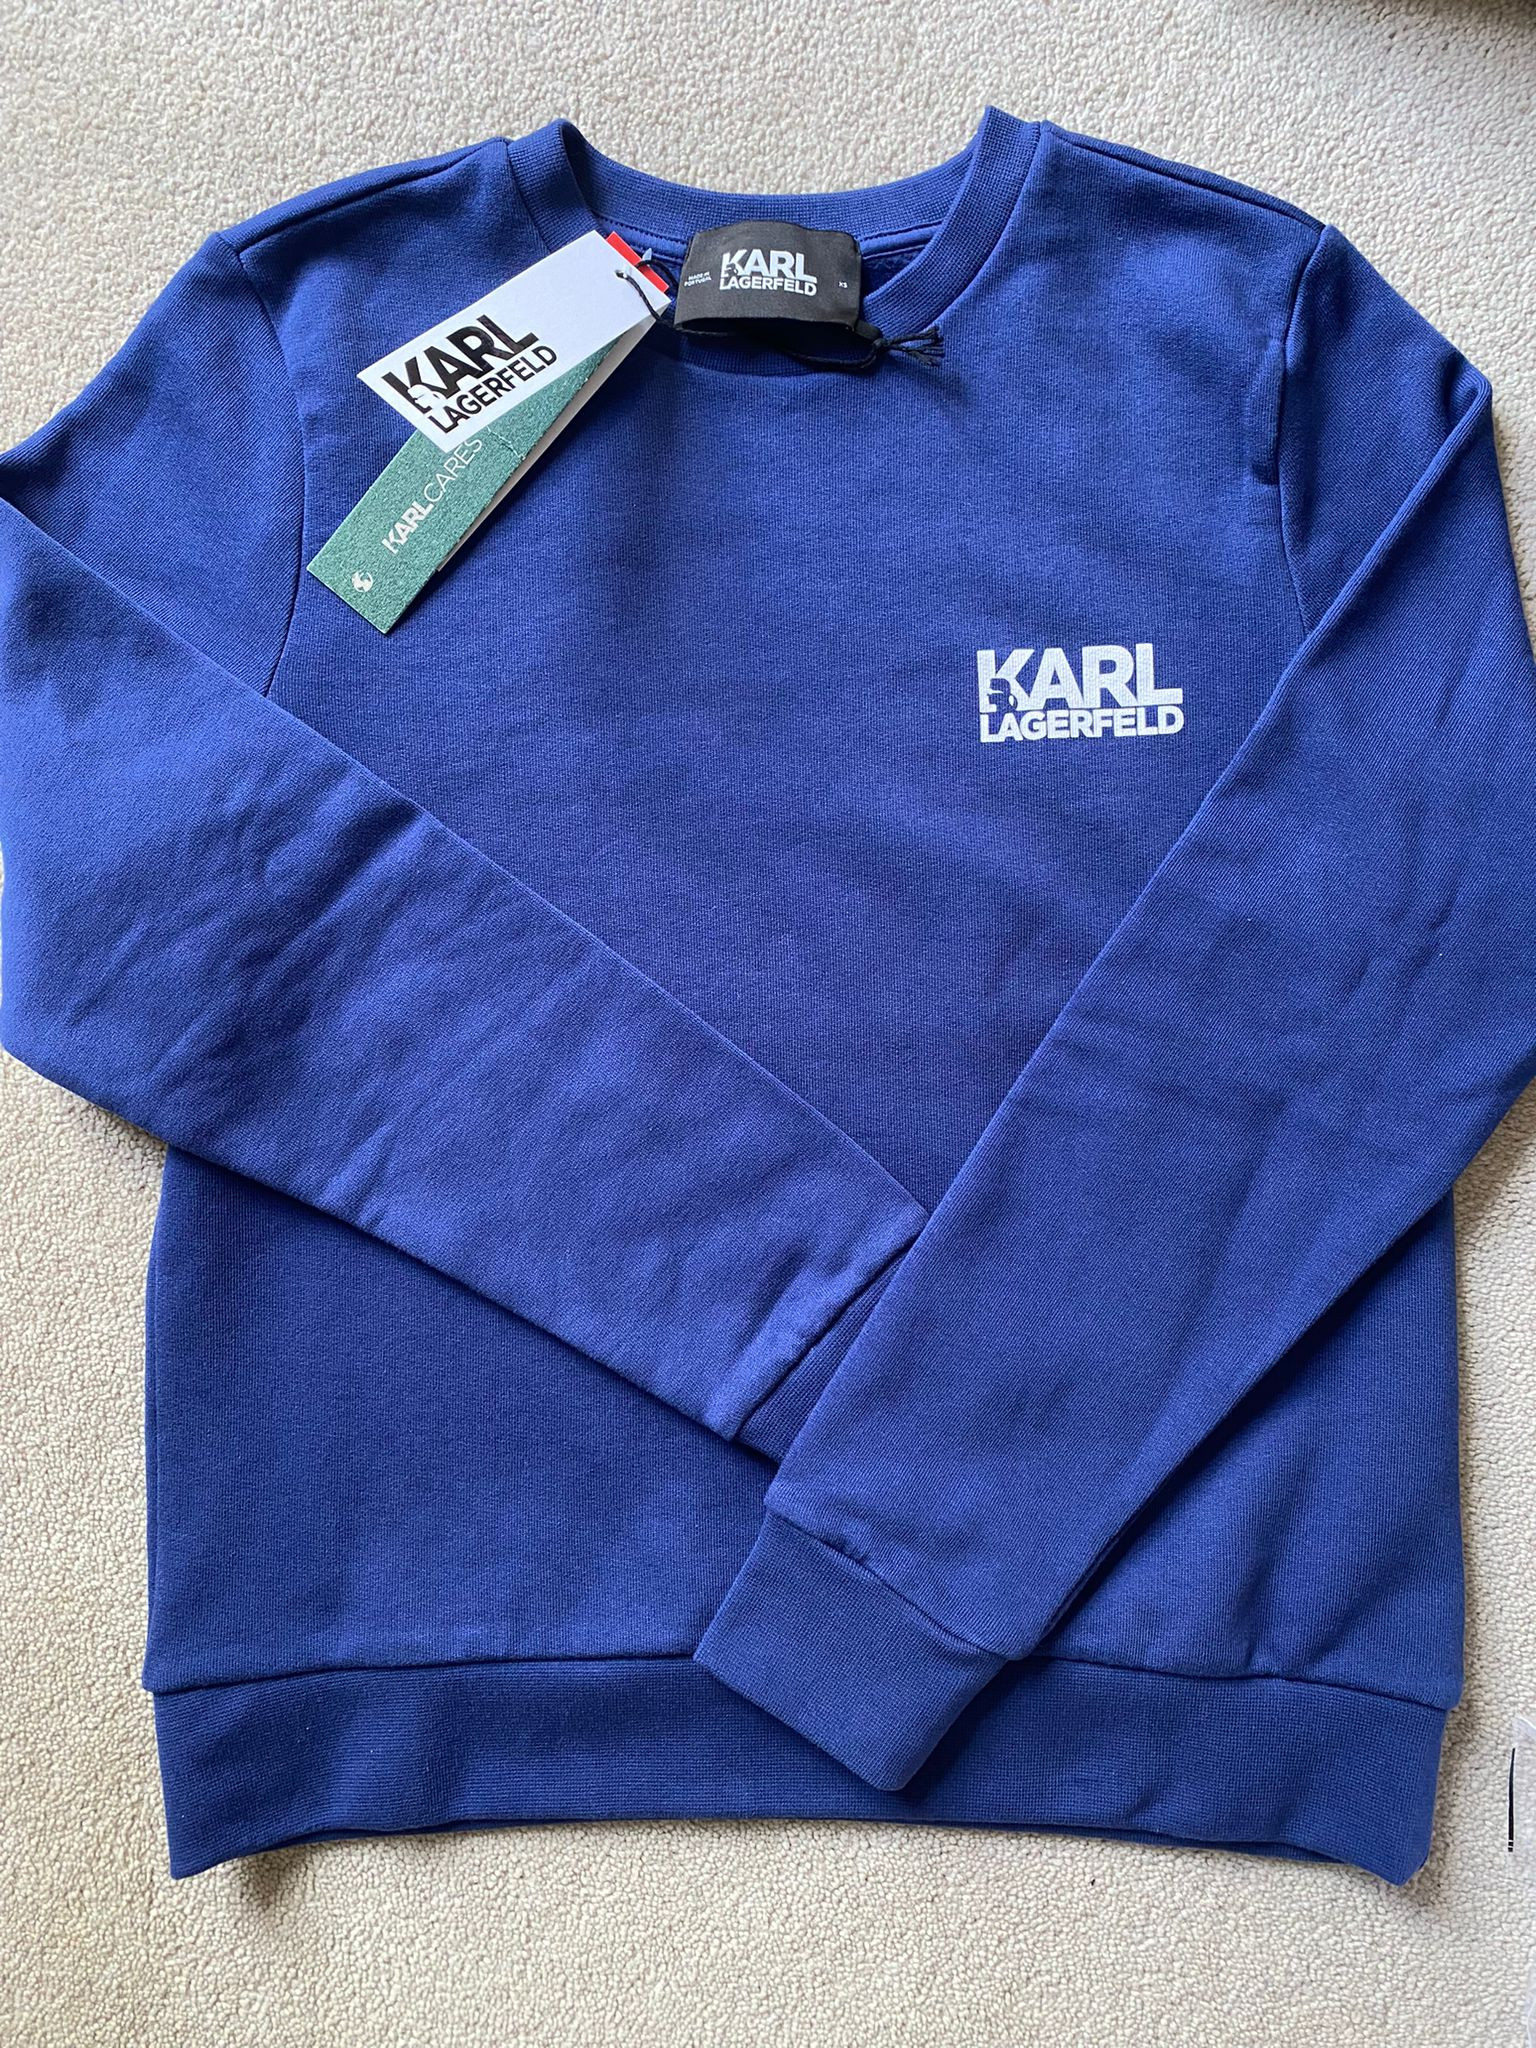 Karl Lagerfeld Sweatshirt - LNS Navy / 22WW1815 - Size Xs